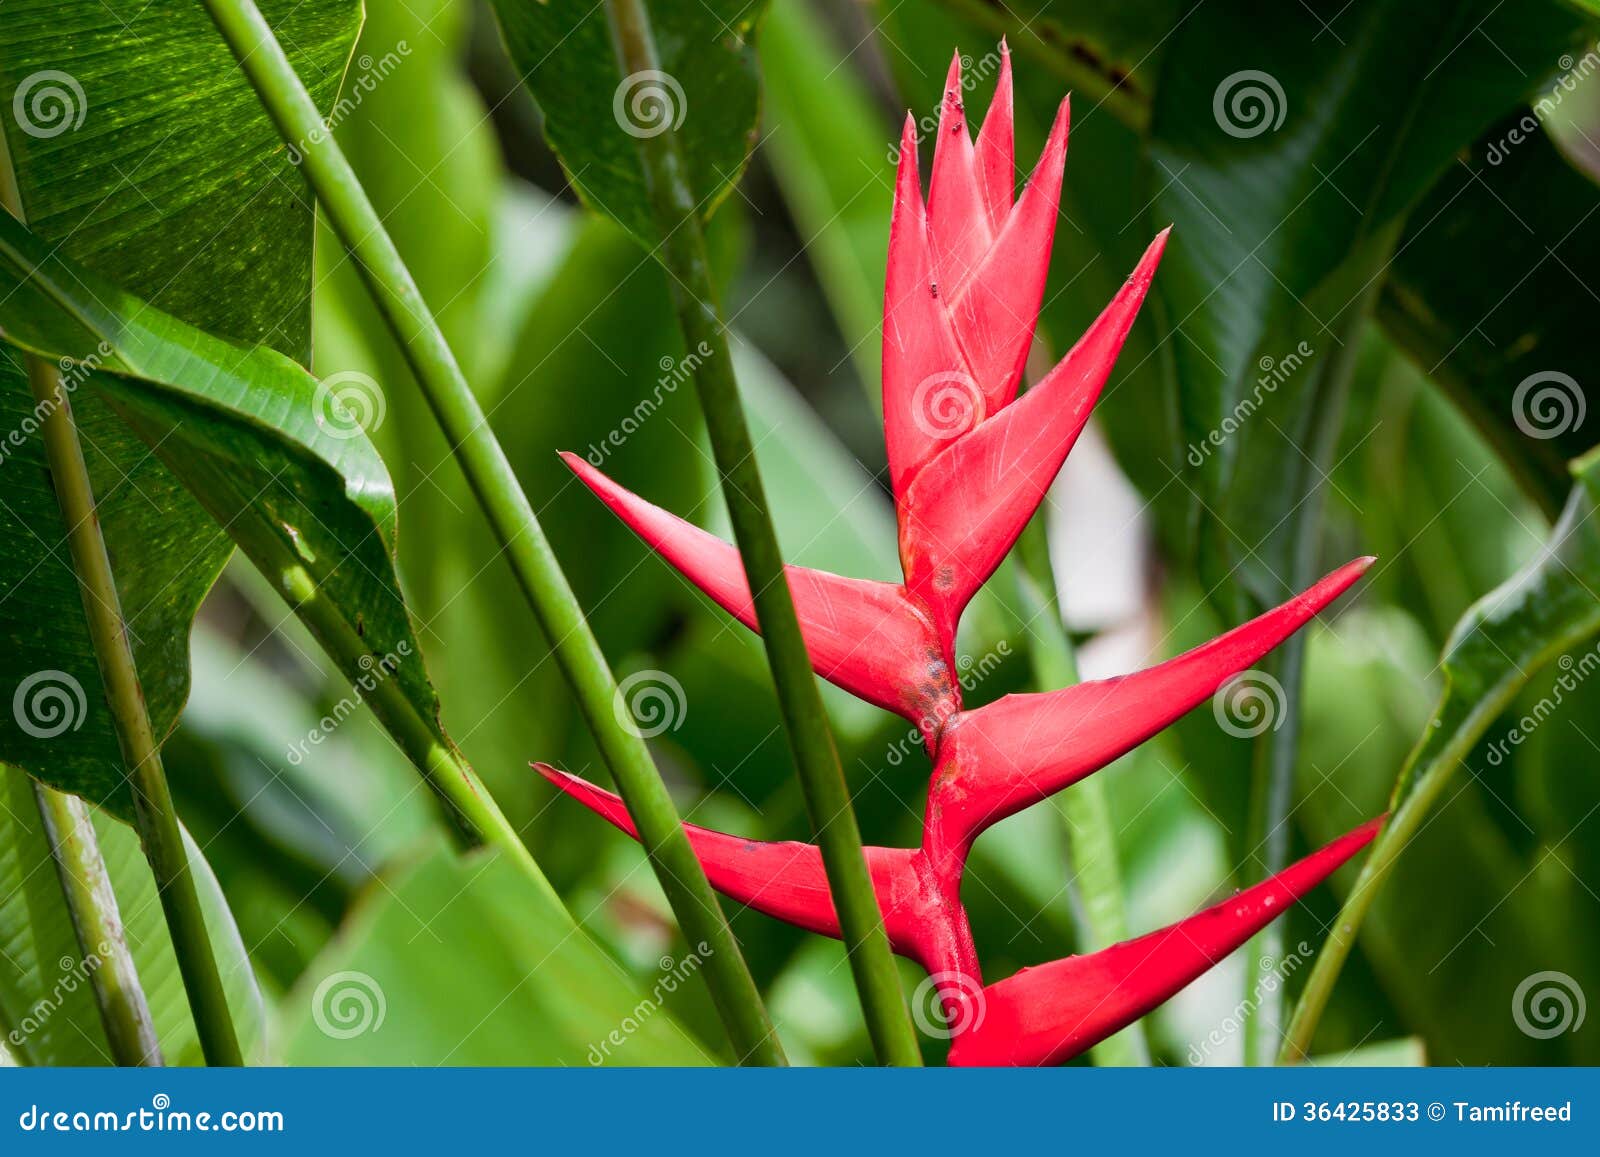 Fleur tropicale rouge image stock. Image du tropical - 36425833